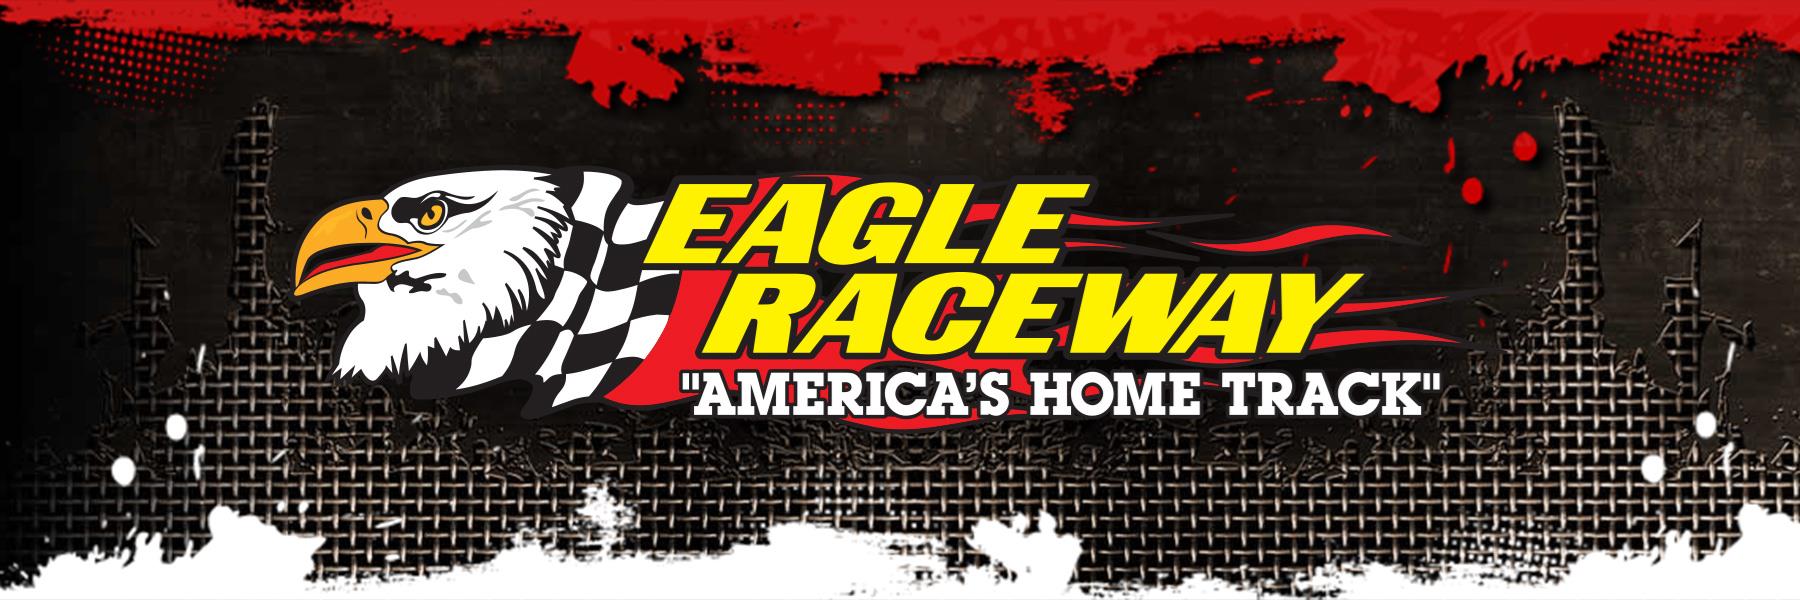 6/27/2020 - Eagle Raceway